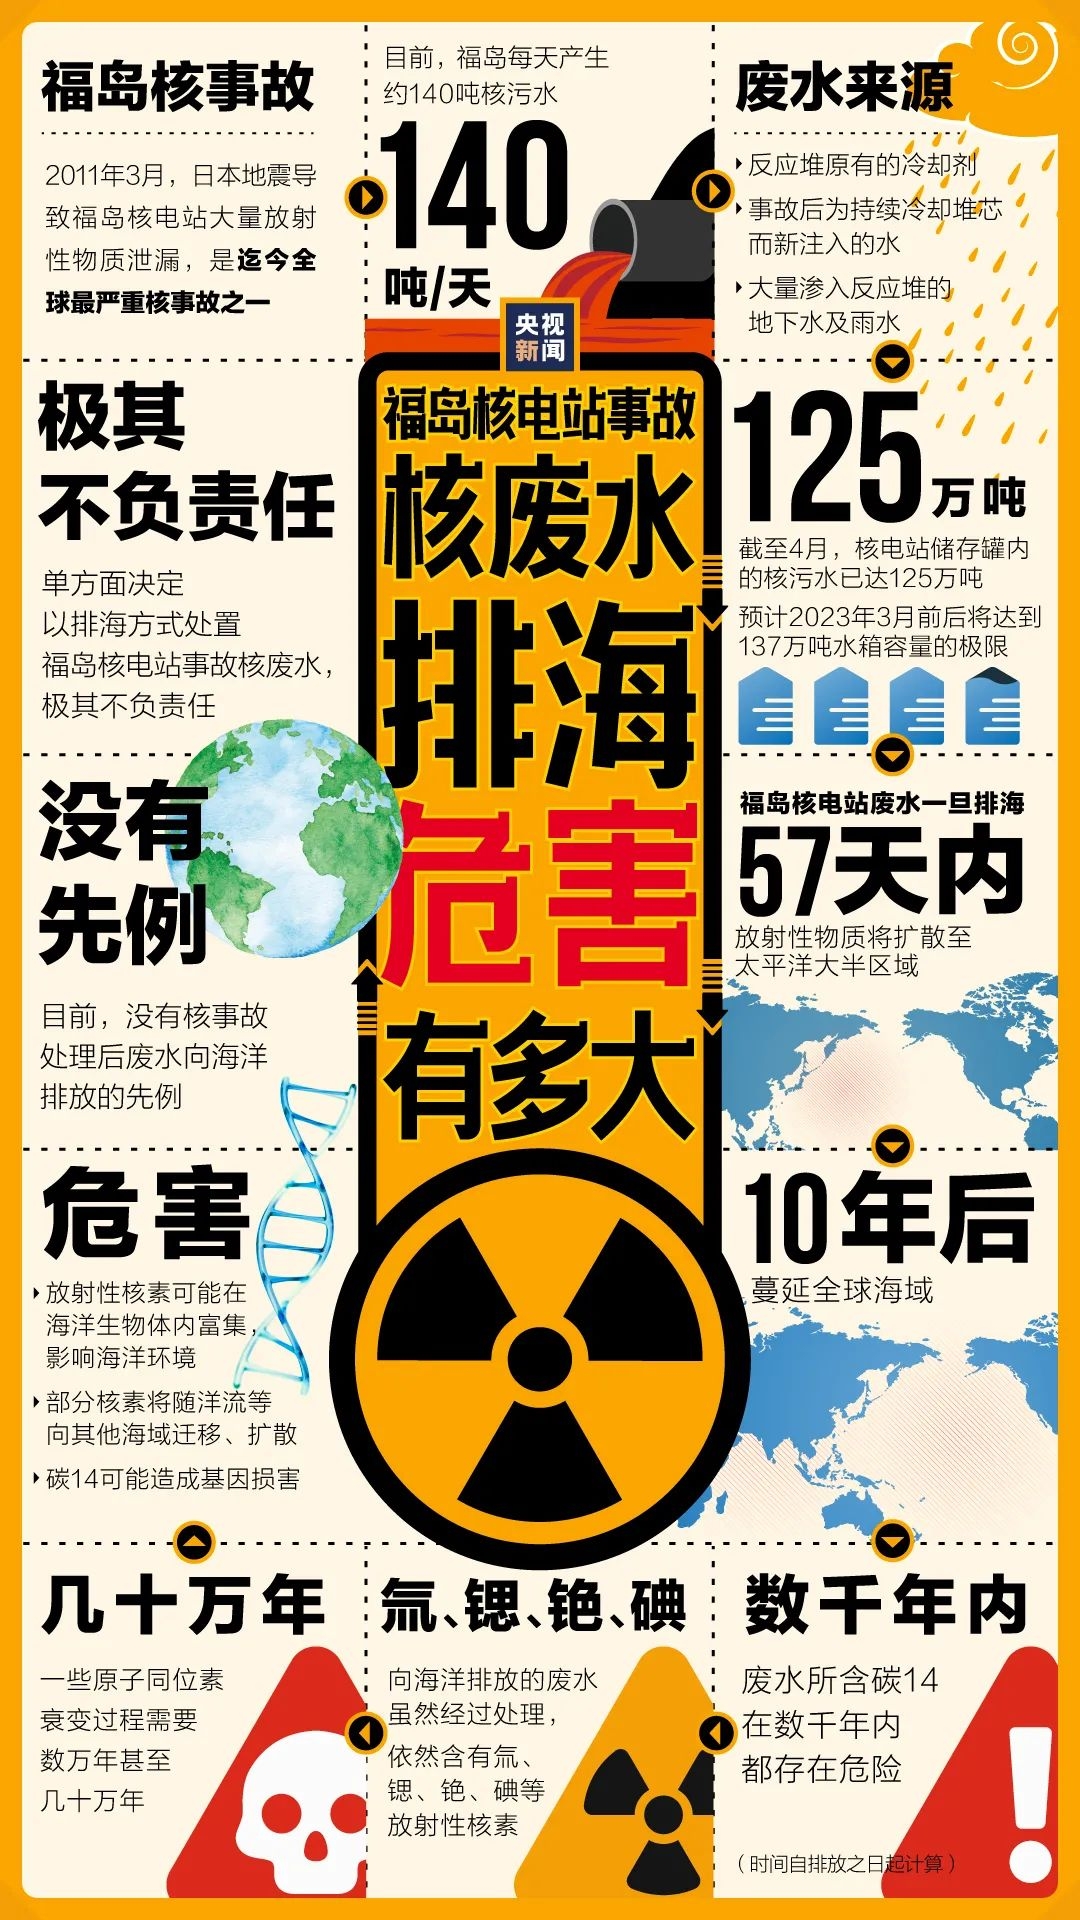 核废水恐损害人类基因,日本推迟倾倒入海计划